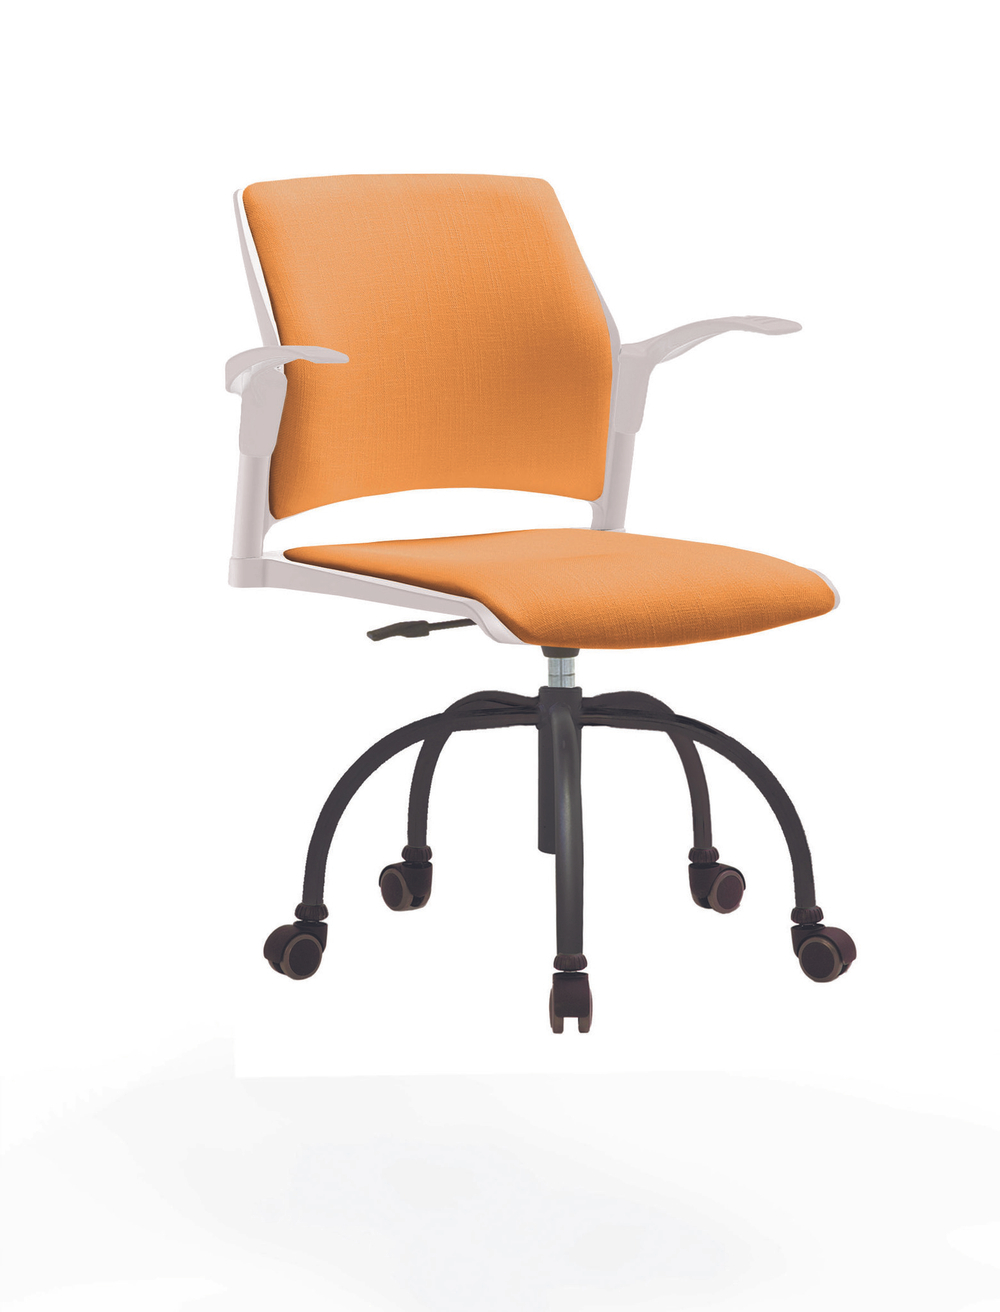 Кресло Rewind каркас черный, пластик белый, база паук краска черная, с открытыми подлокотниками, сиденье и спинка оранжевые